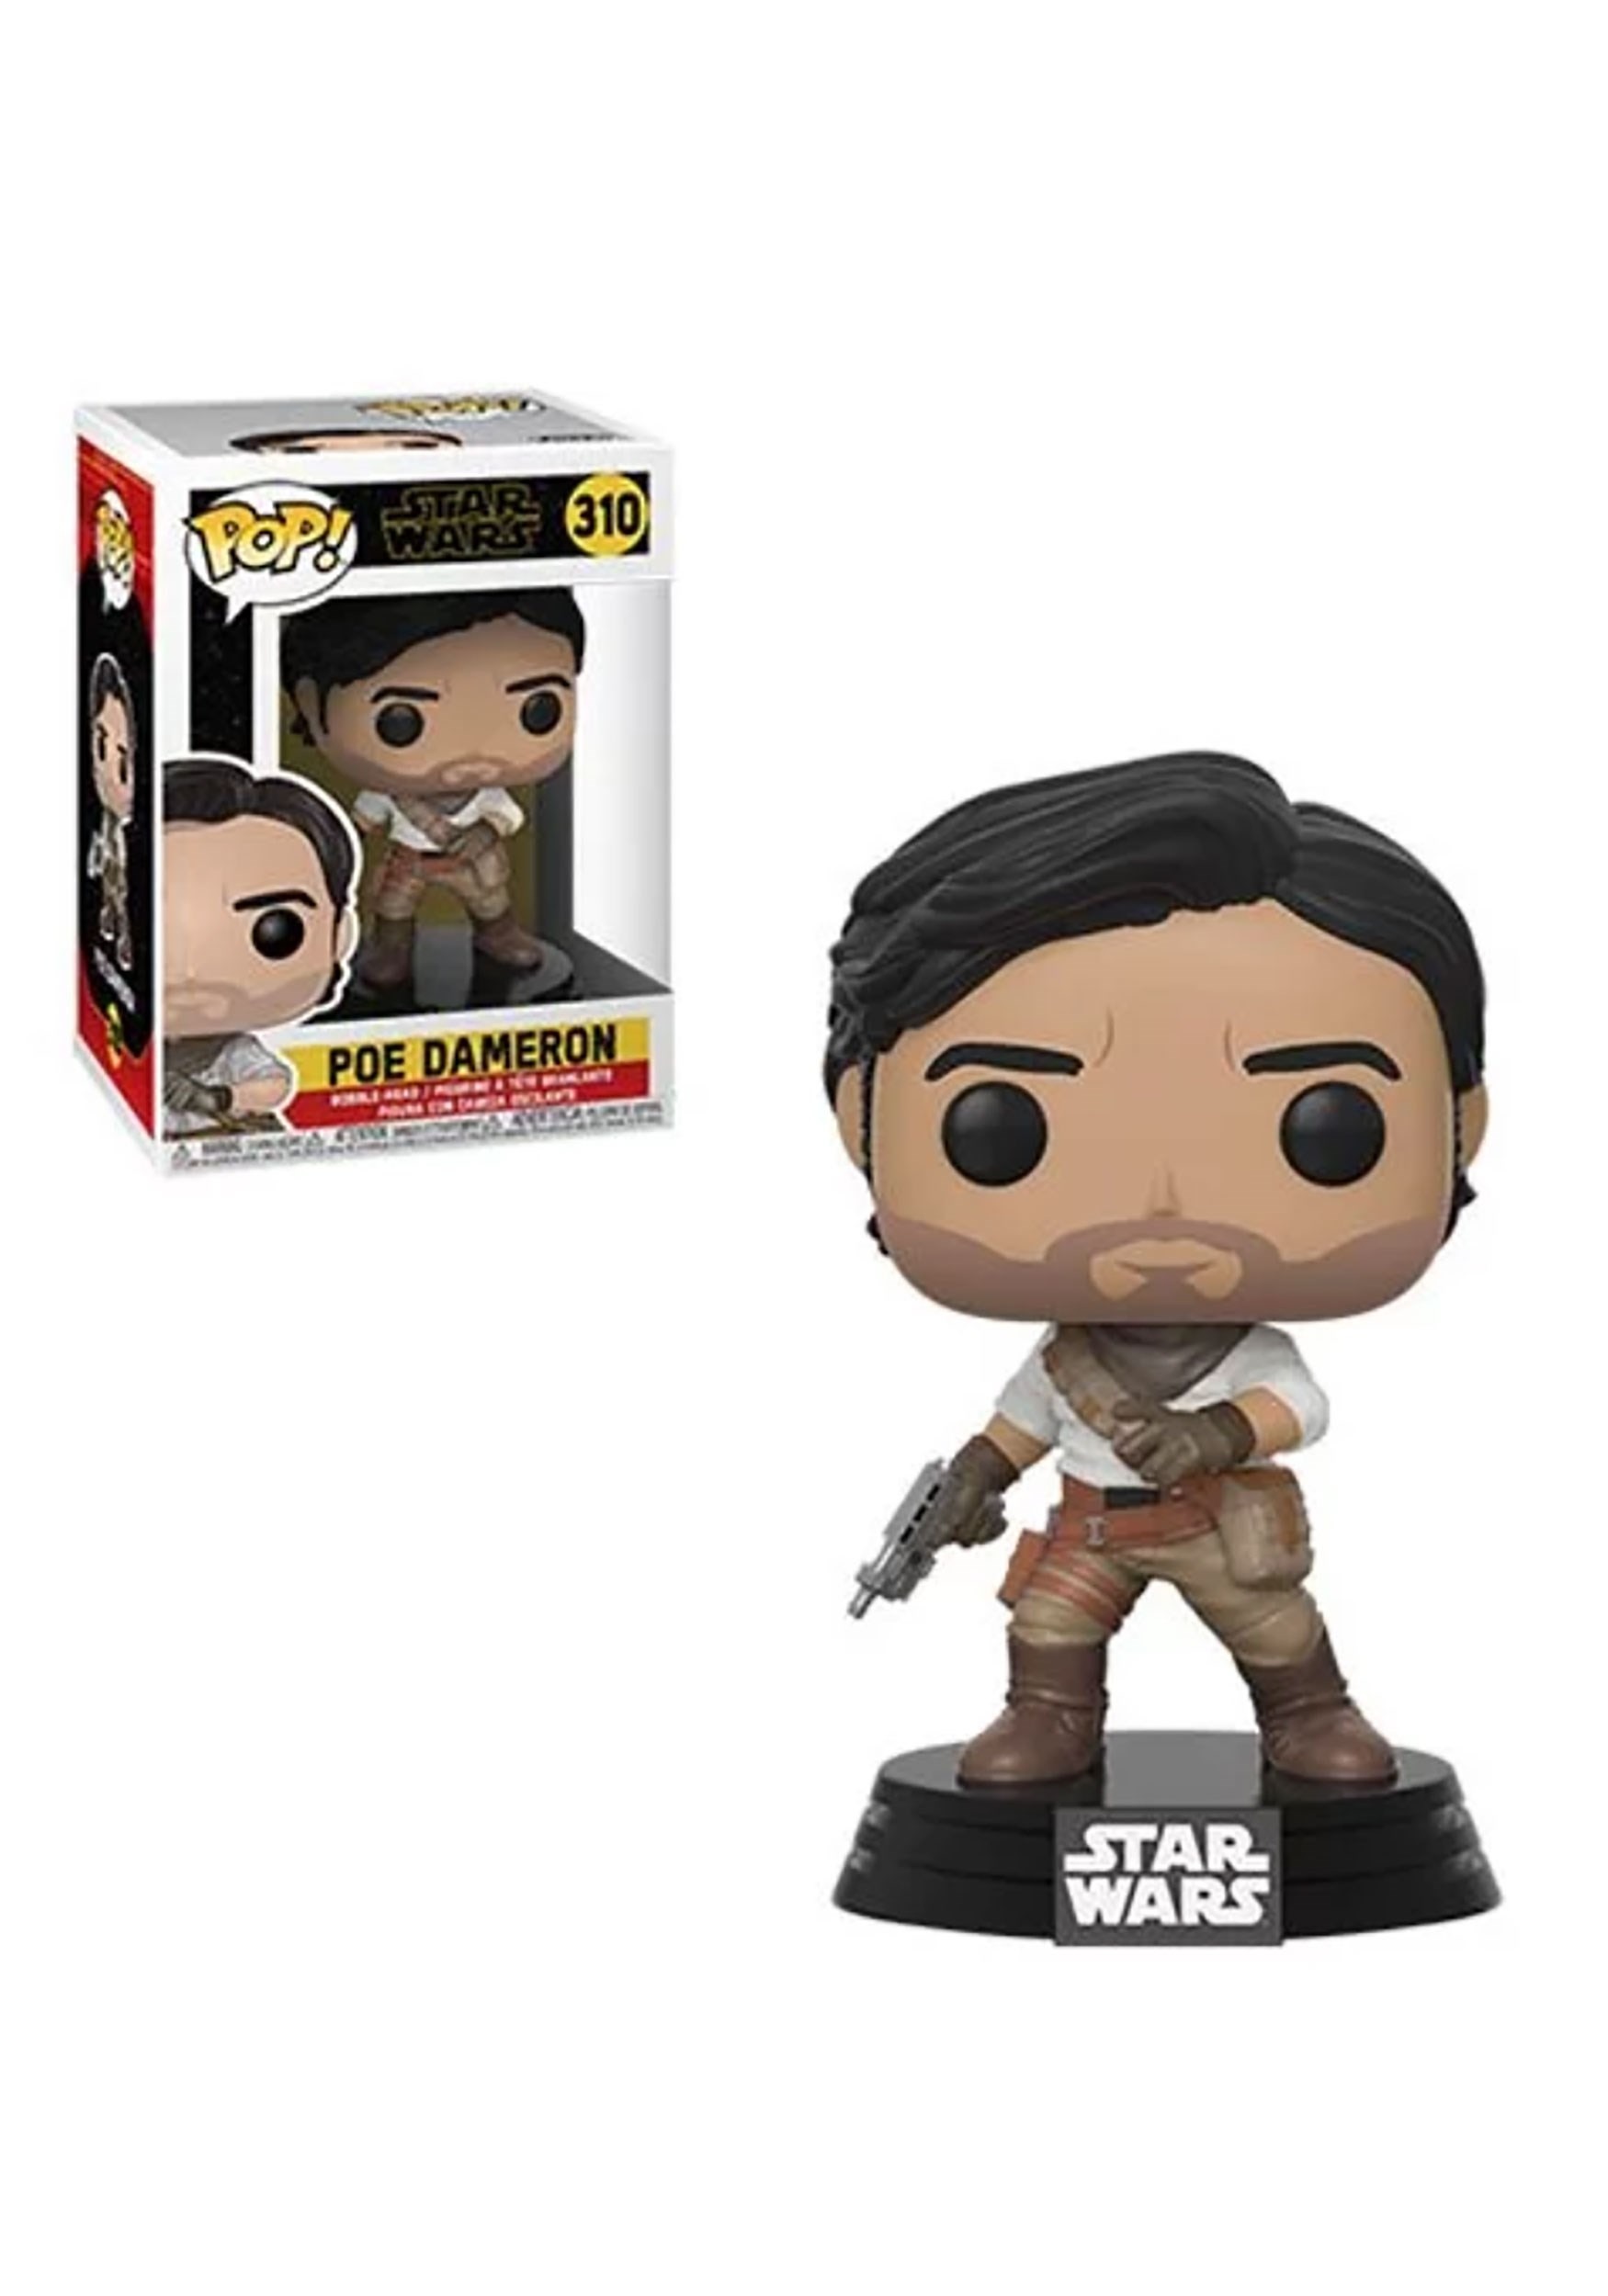 Poe Dameron Pop! Star Wars: The Rise of Skywalker Bobblehead Figure